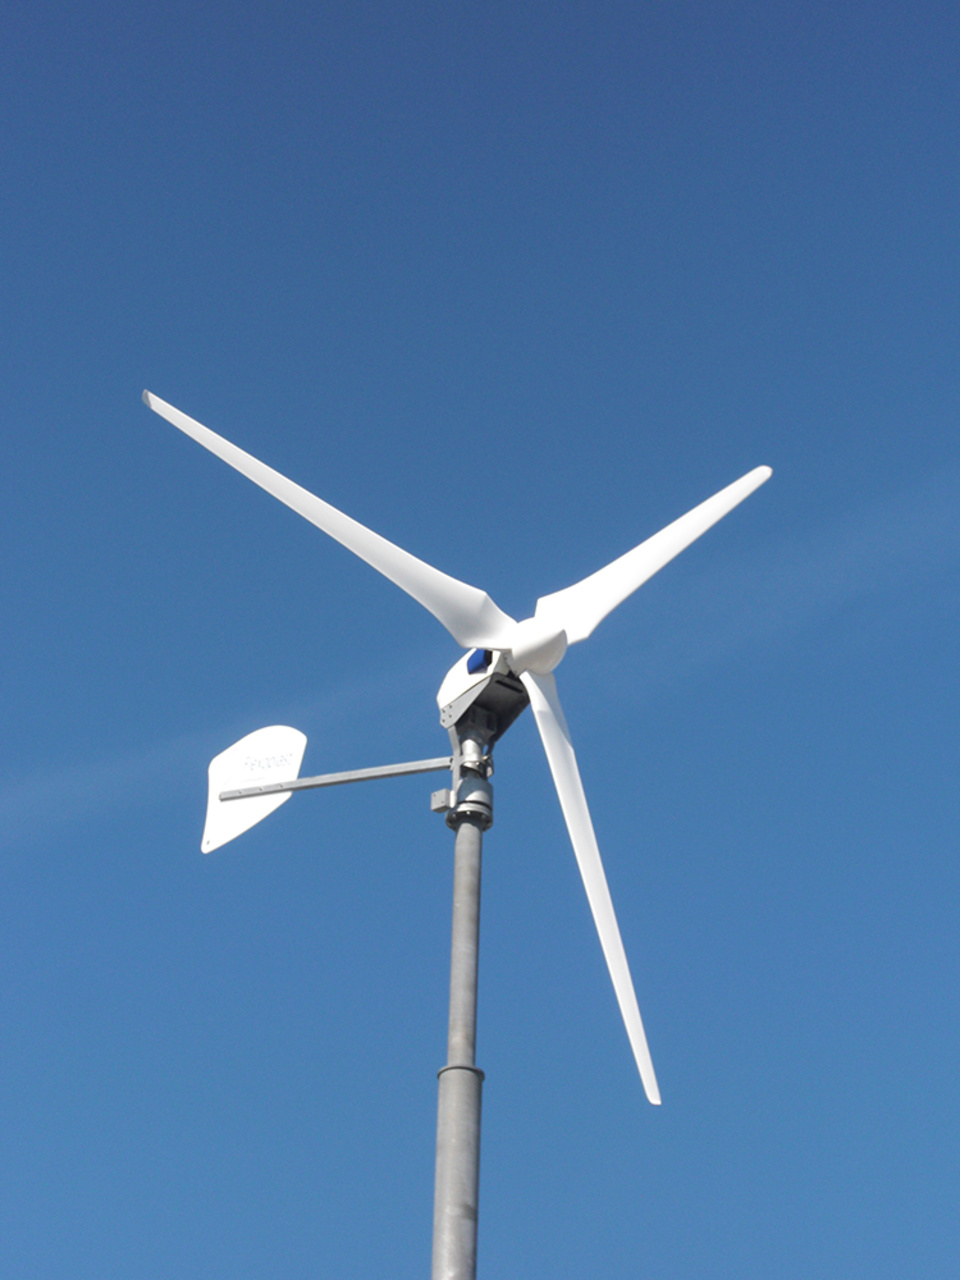 Windkraft2 bei Industrie Service Elektro Schneider in Landsberg am Lech